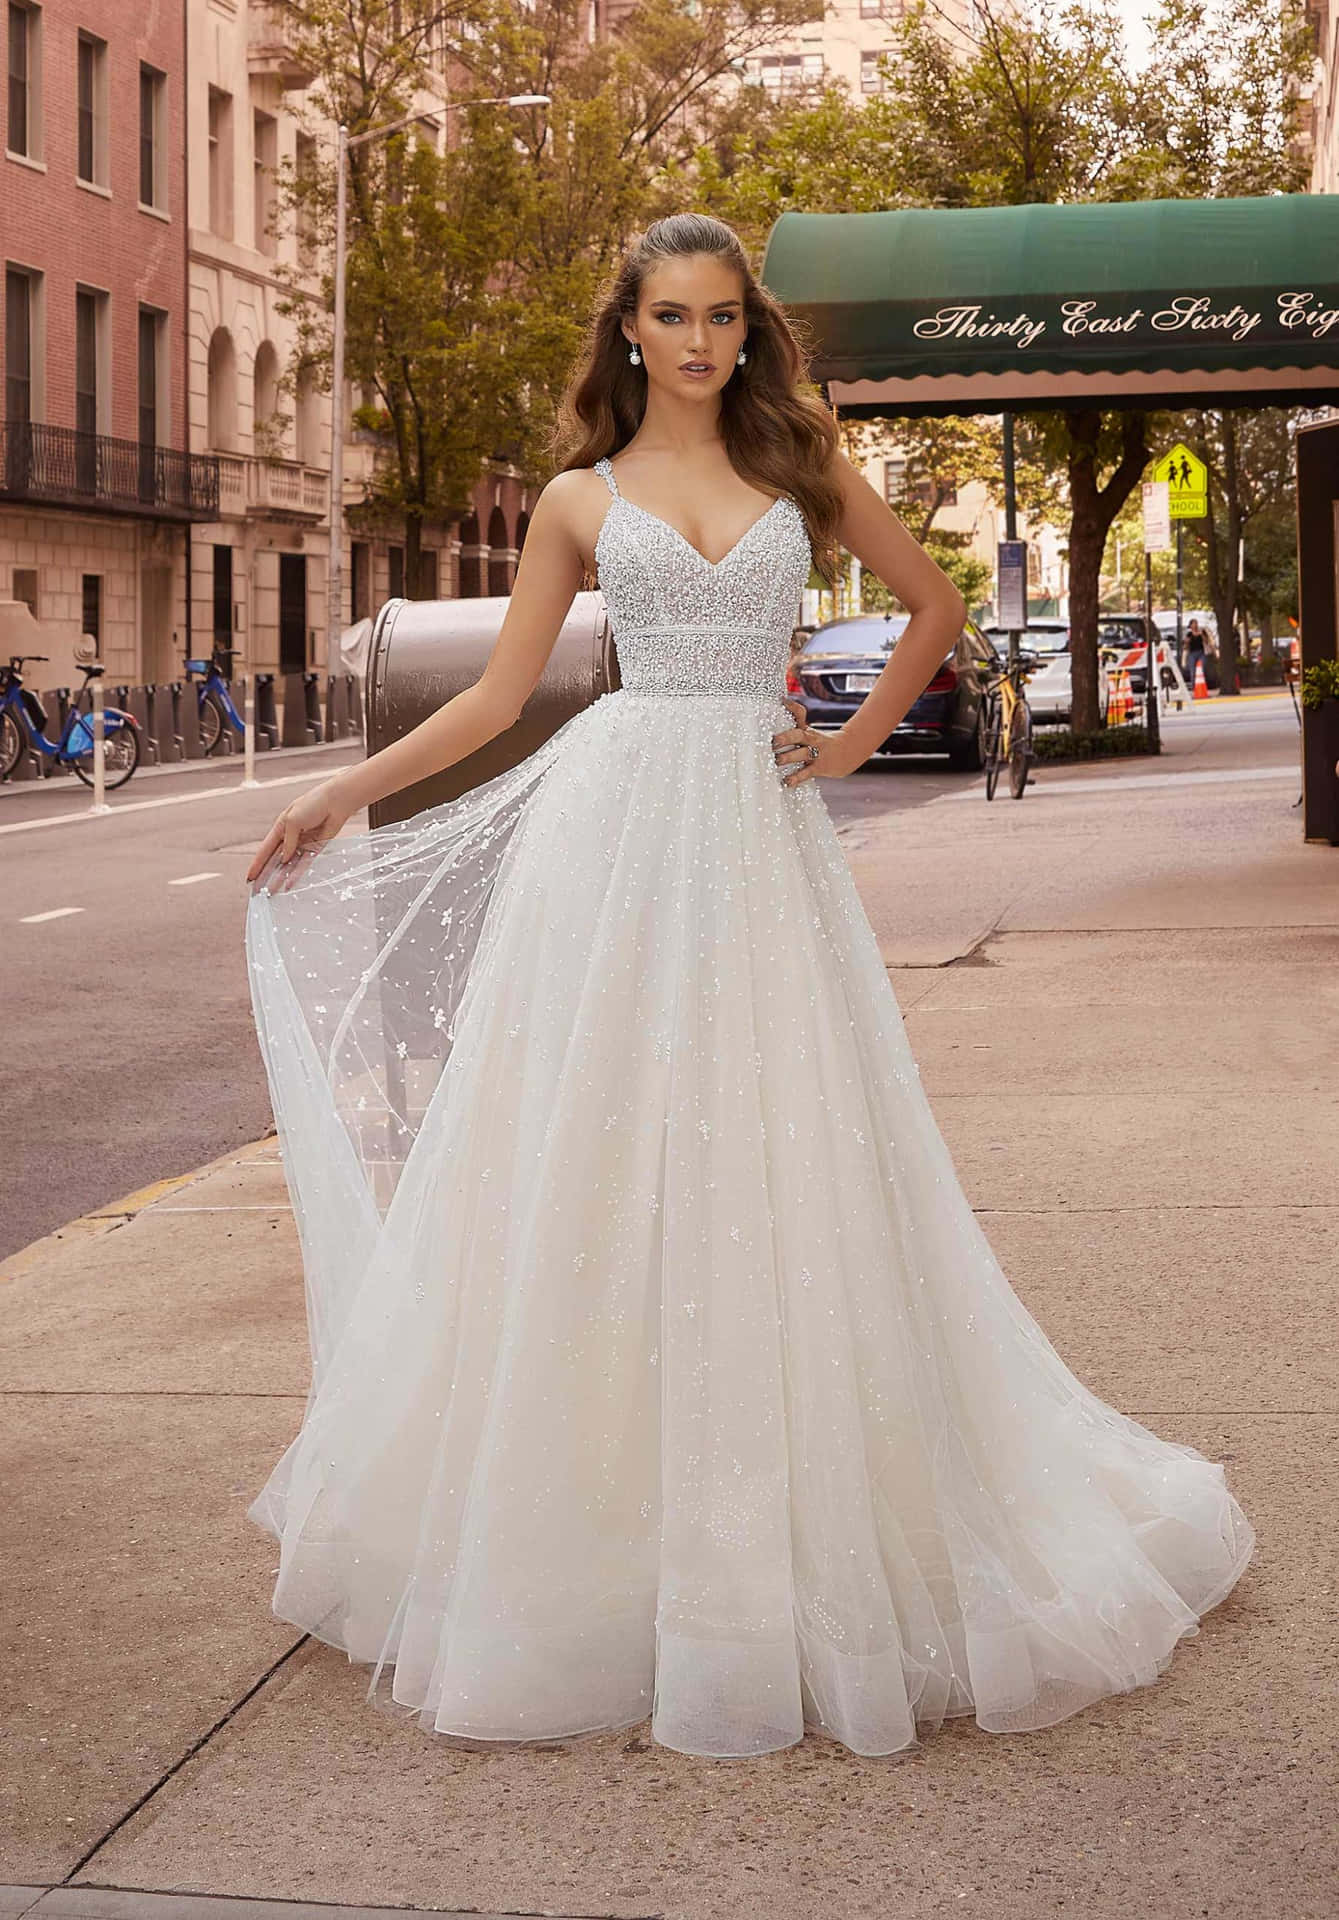 Einefrau In Einem Hochzeitskleid Steht Auf Dem Gehweg.